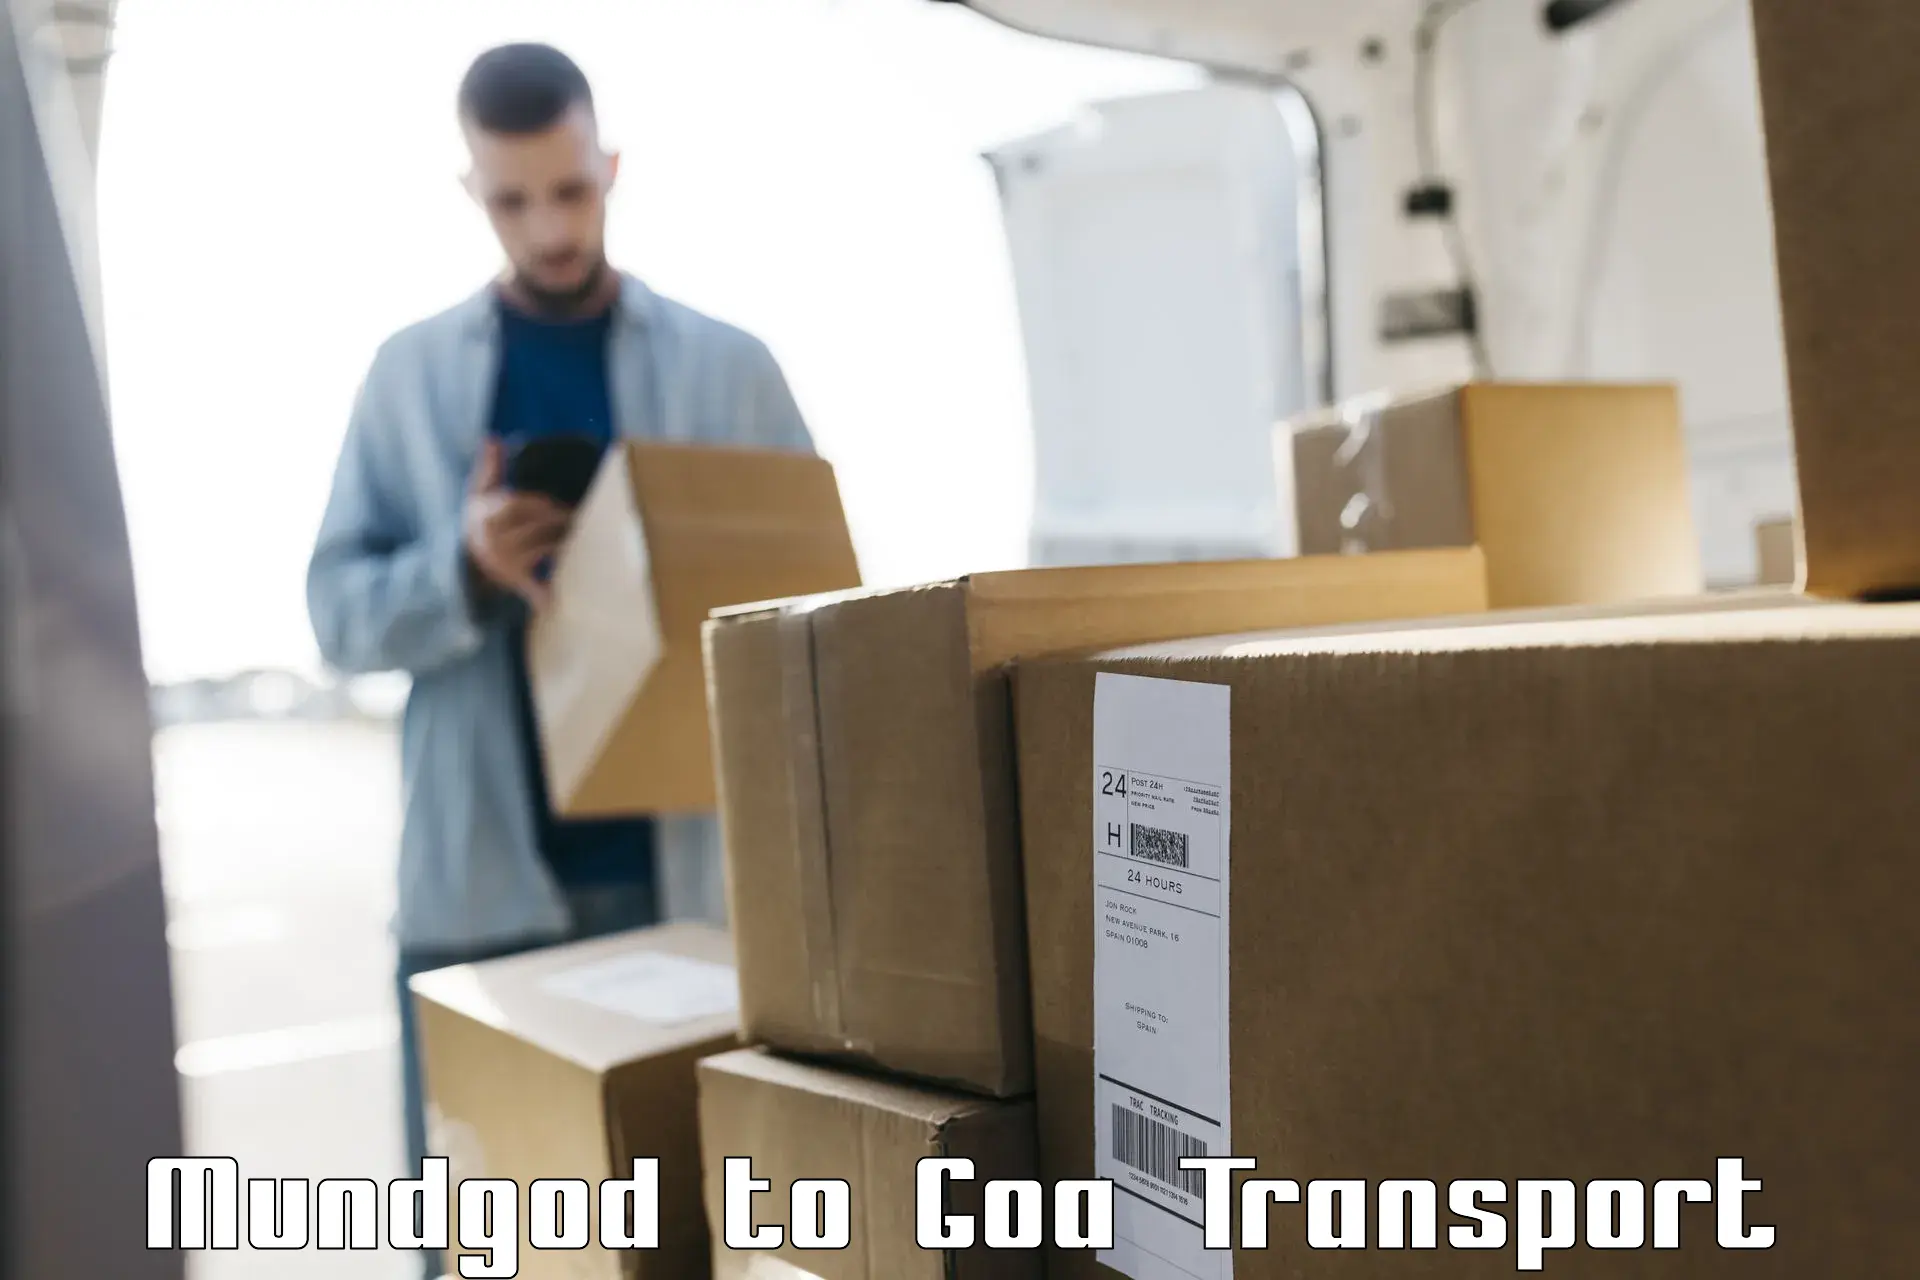 Cargo transport services Mundgod to IIT Goa